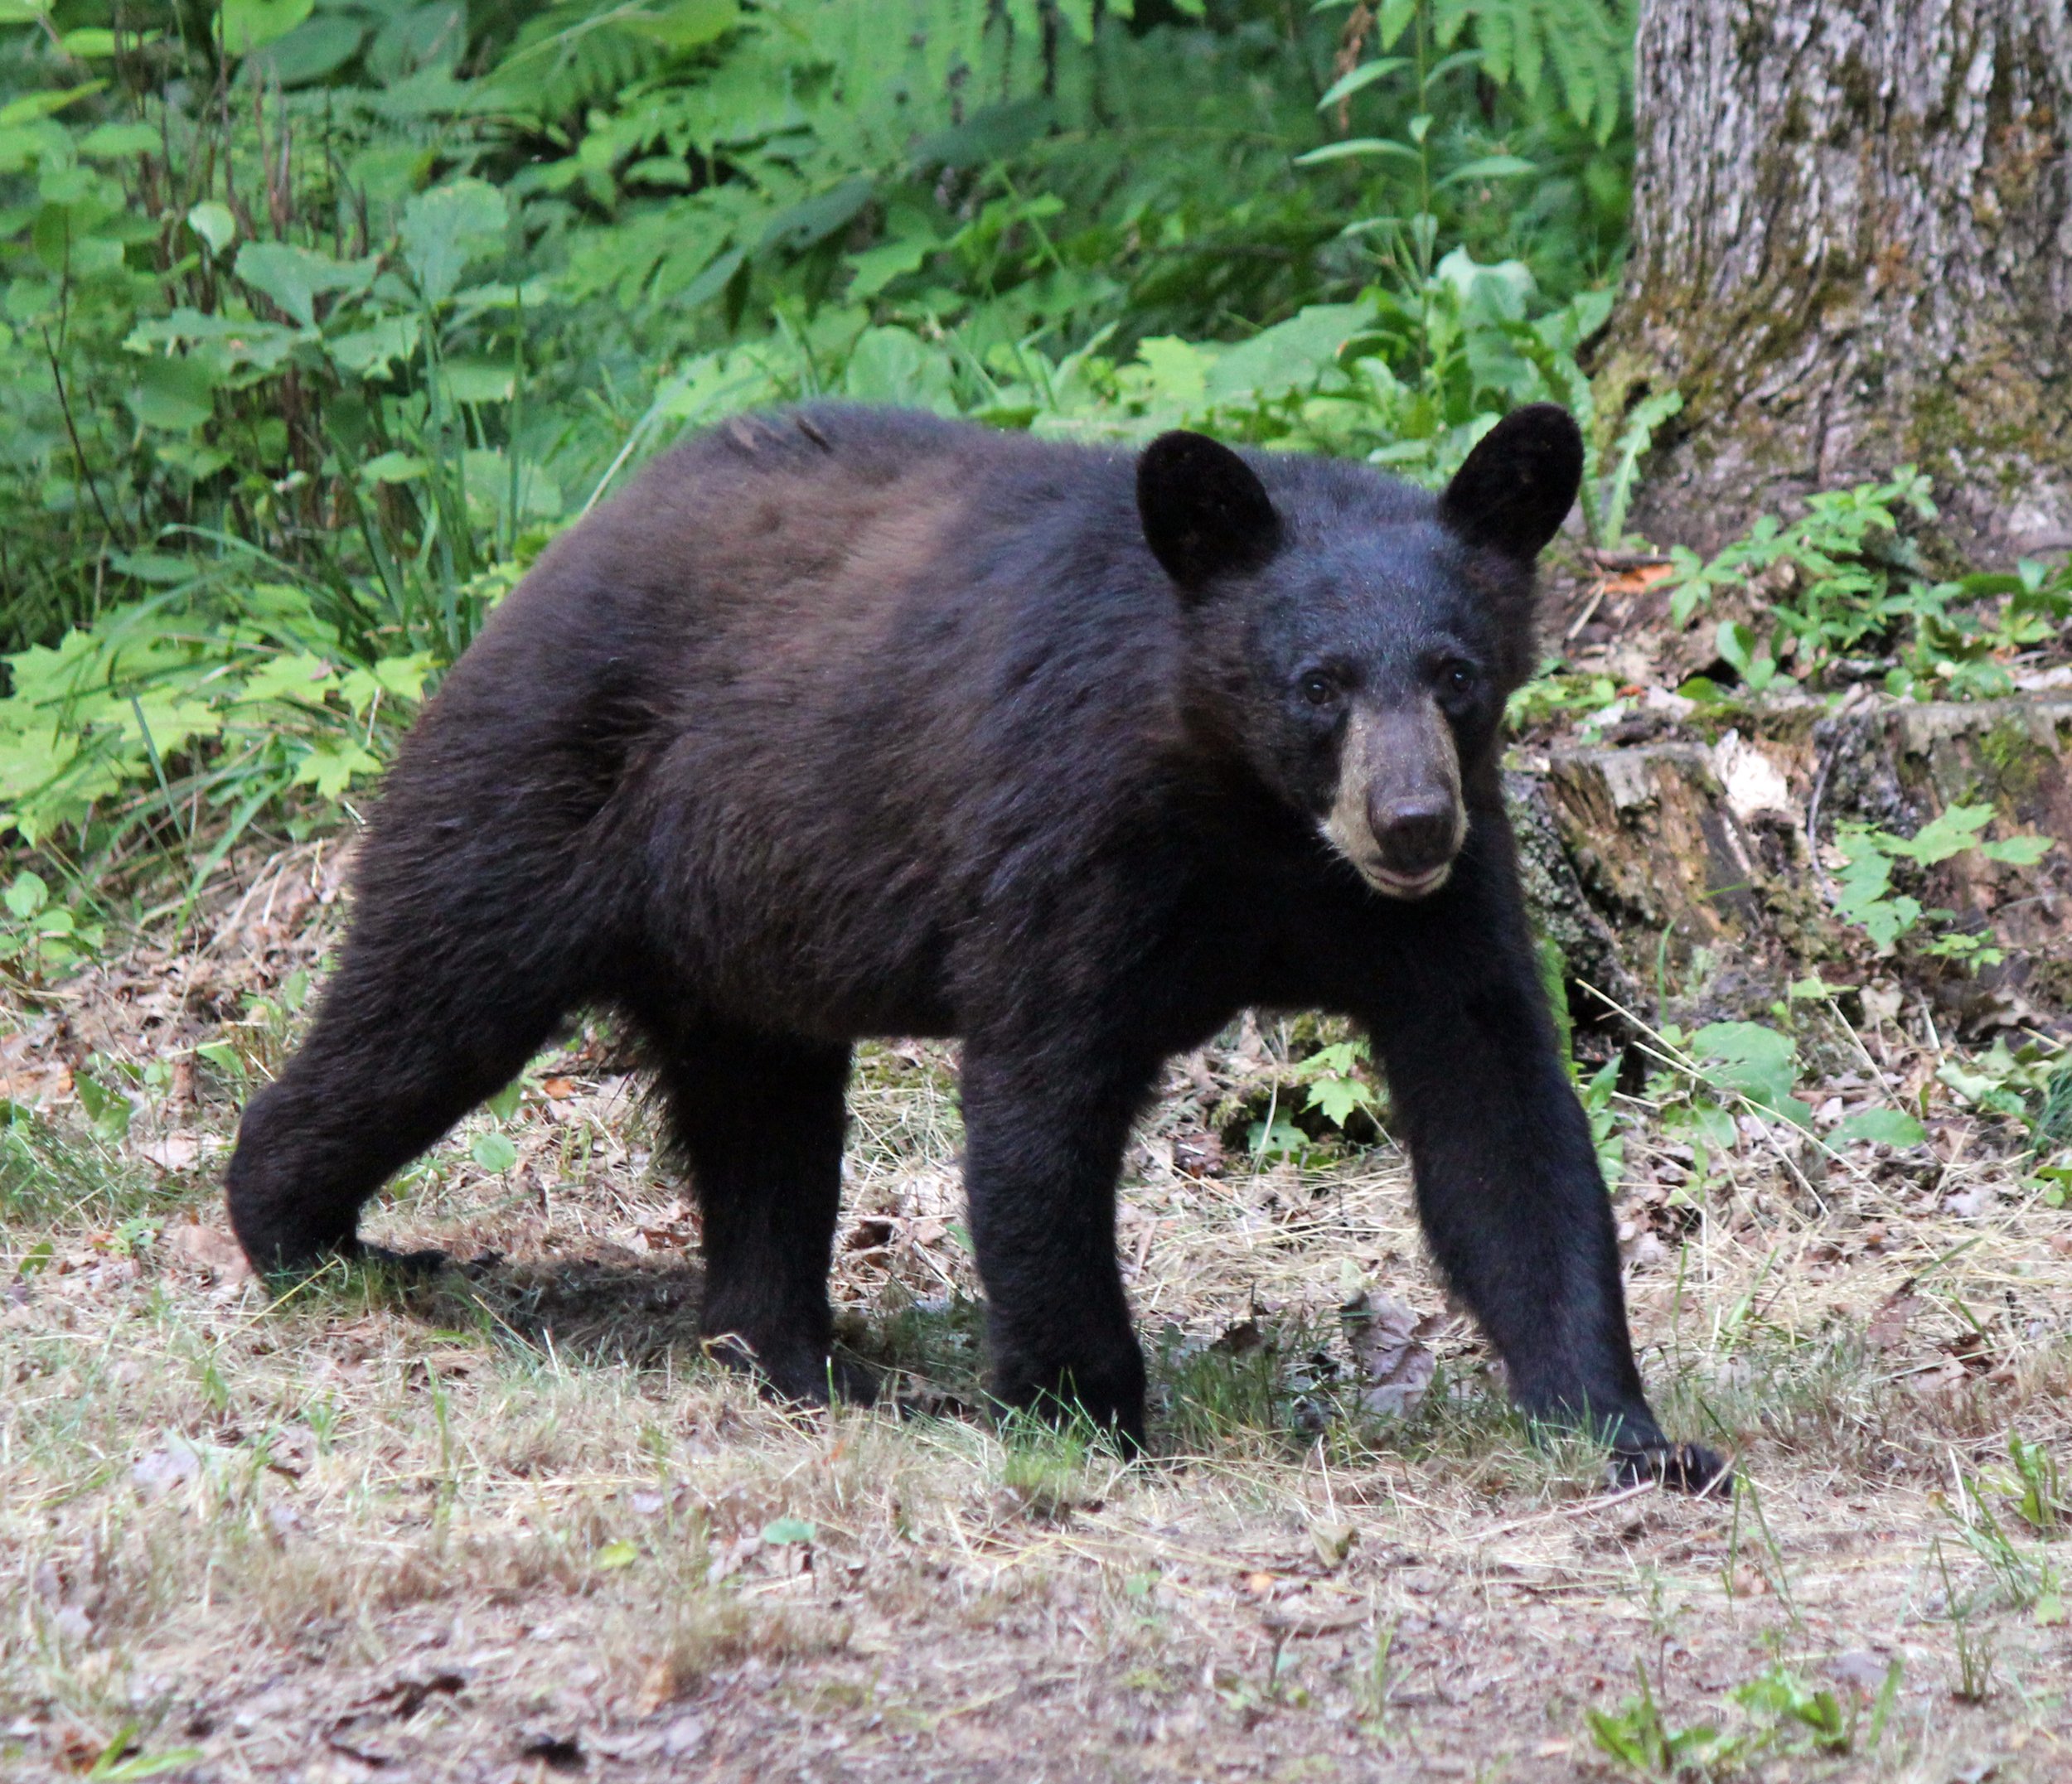 Wildlife Watching Wednesday: Wild Black Bears